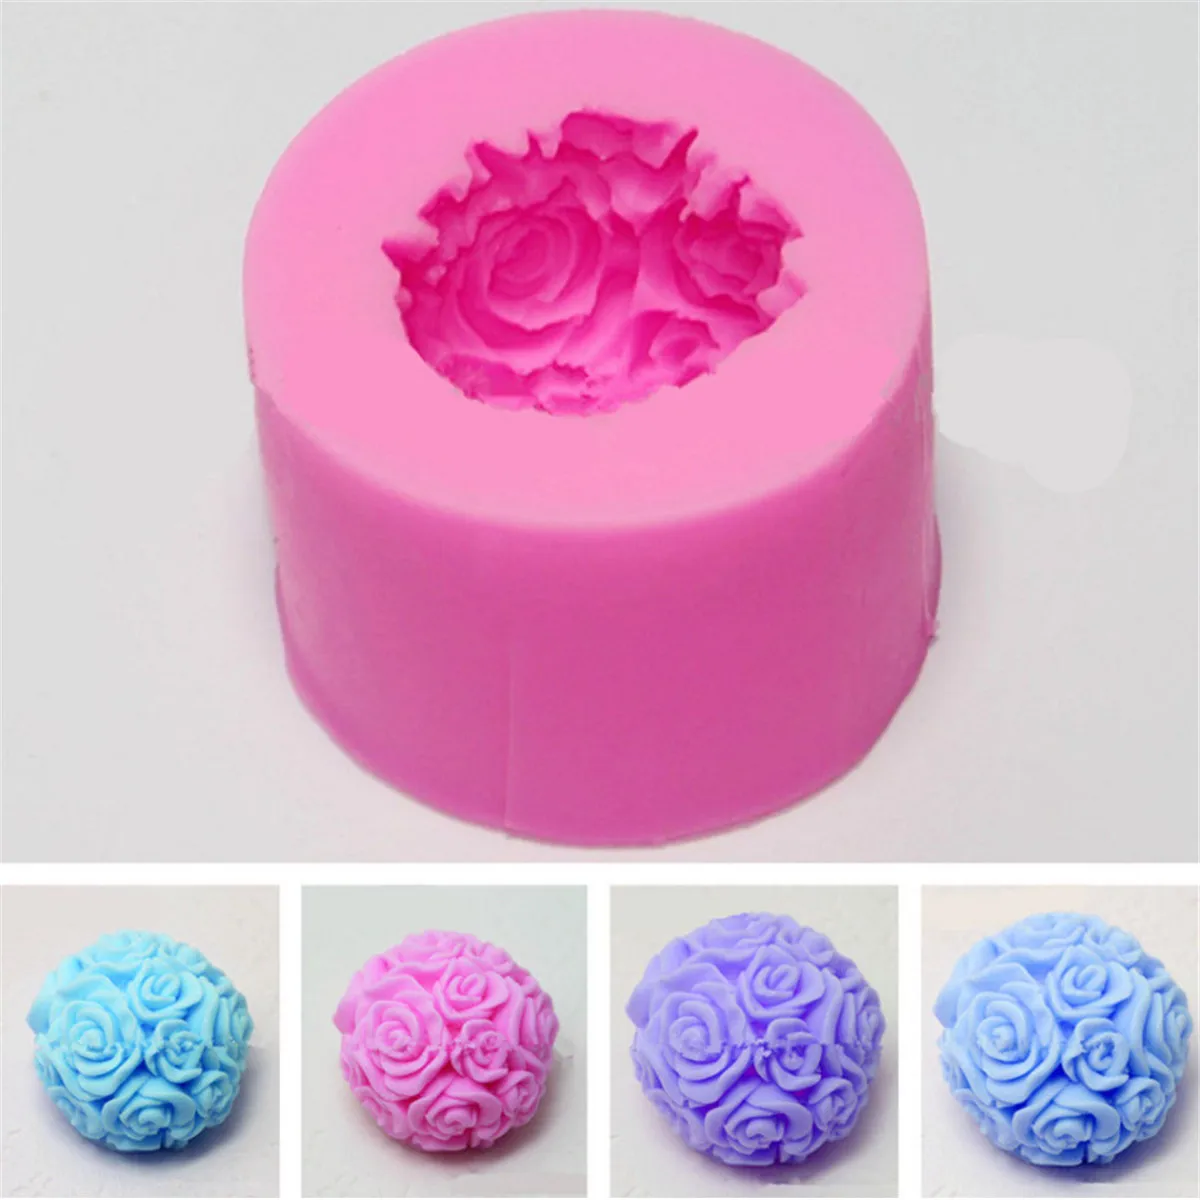 3D Rosa Flor Bola Forma Decoración De Silicona Moldes de jabón de Vela Molde Artesanía Herramienta de BRICOLAJE 